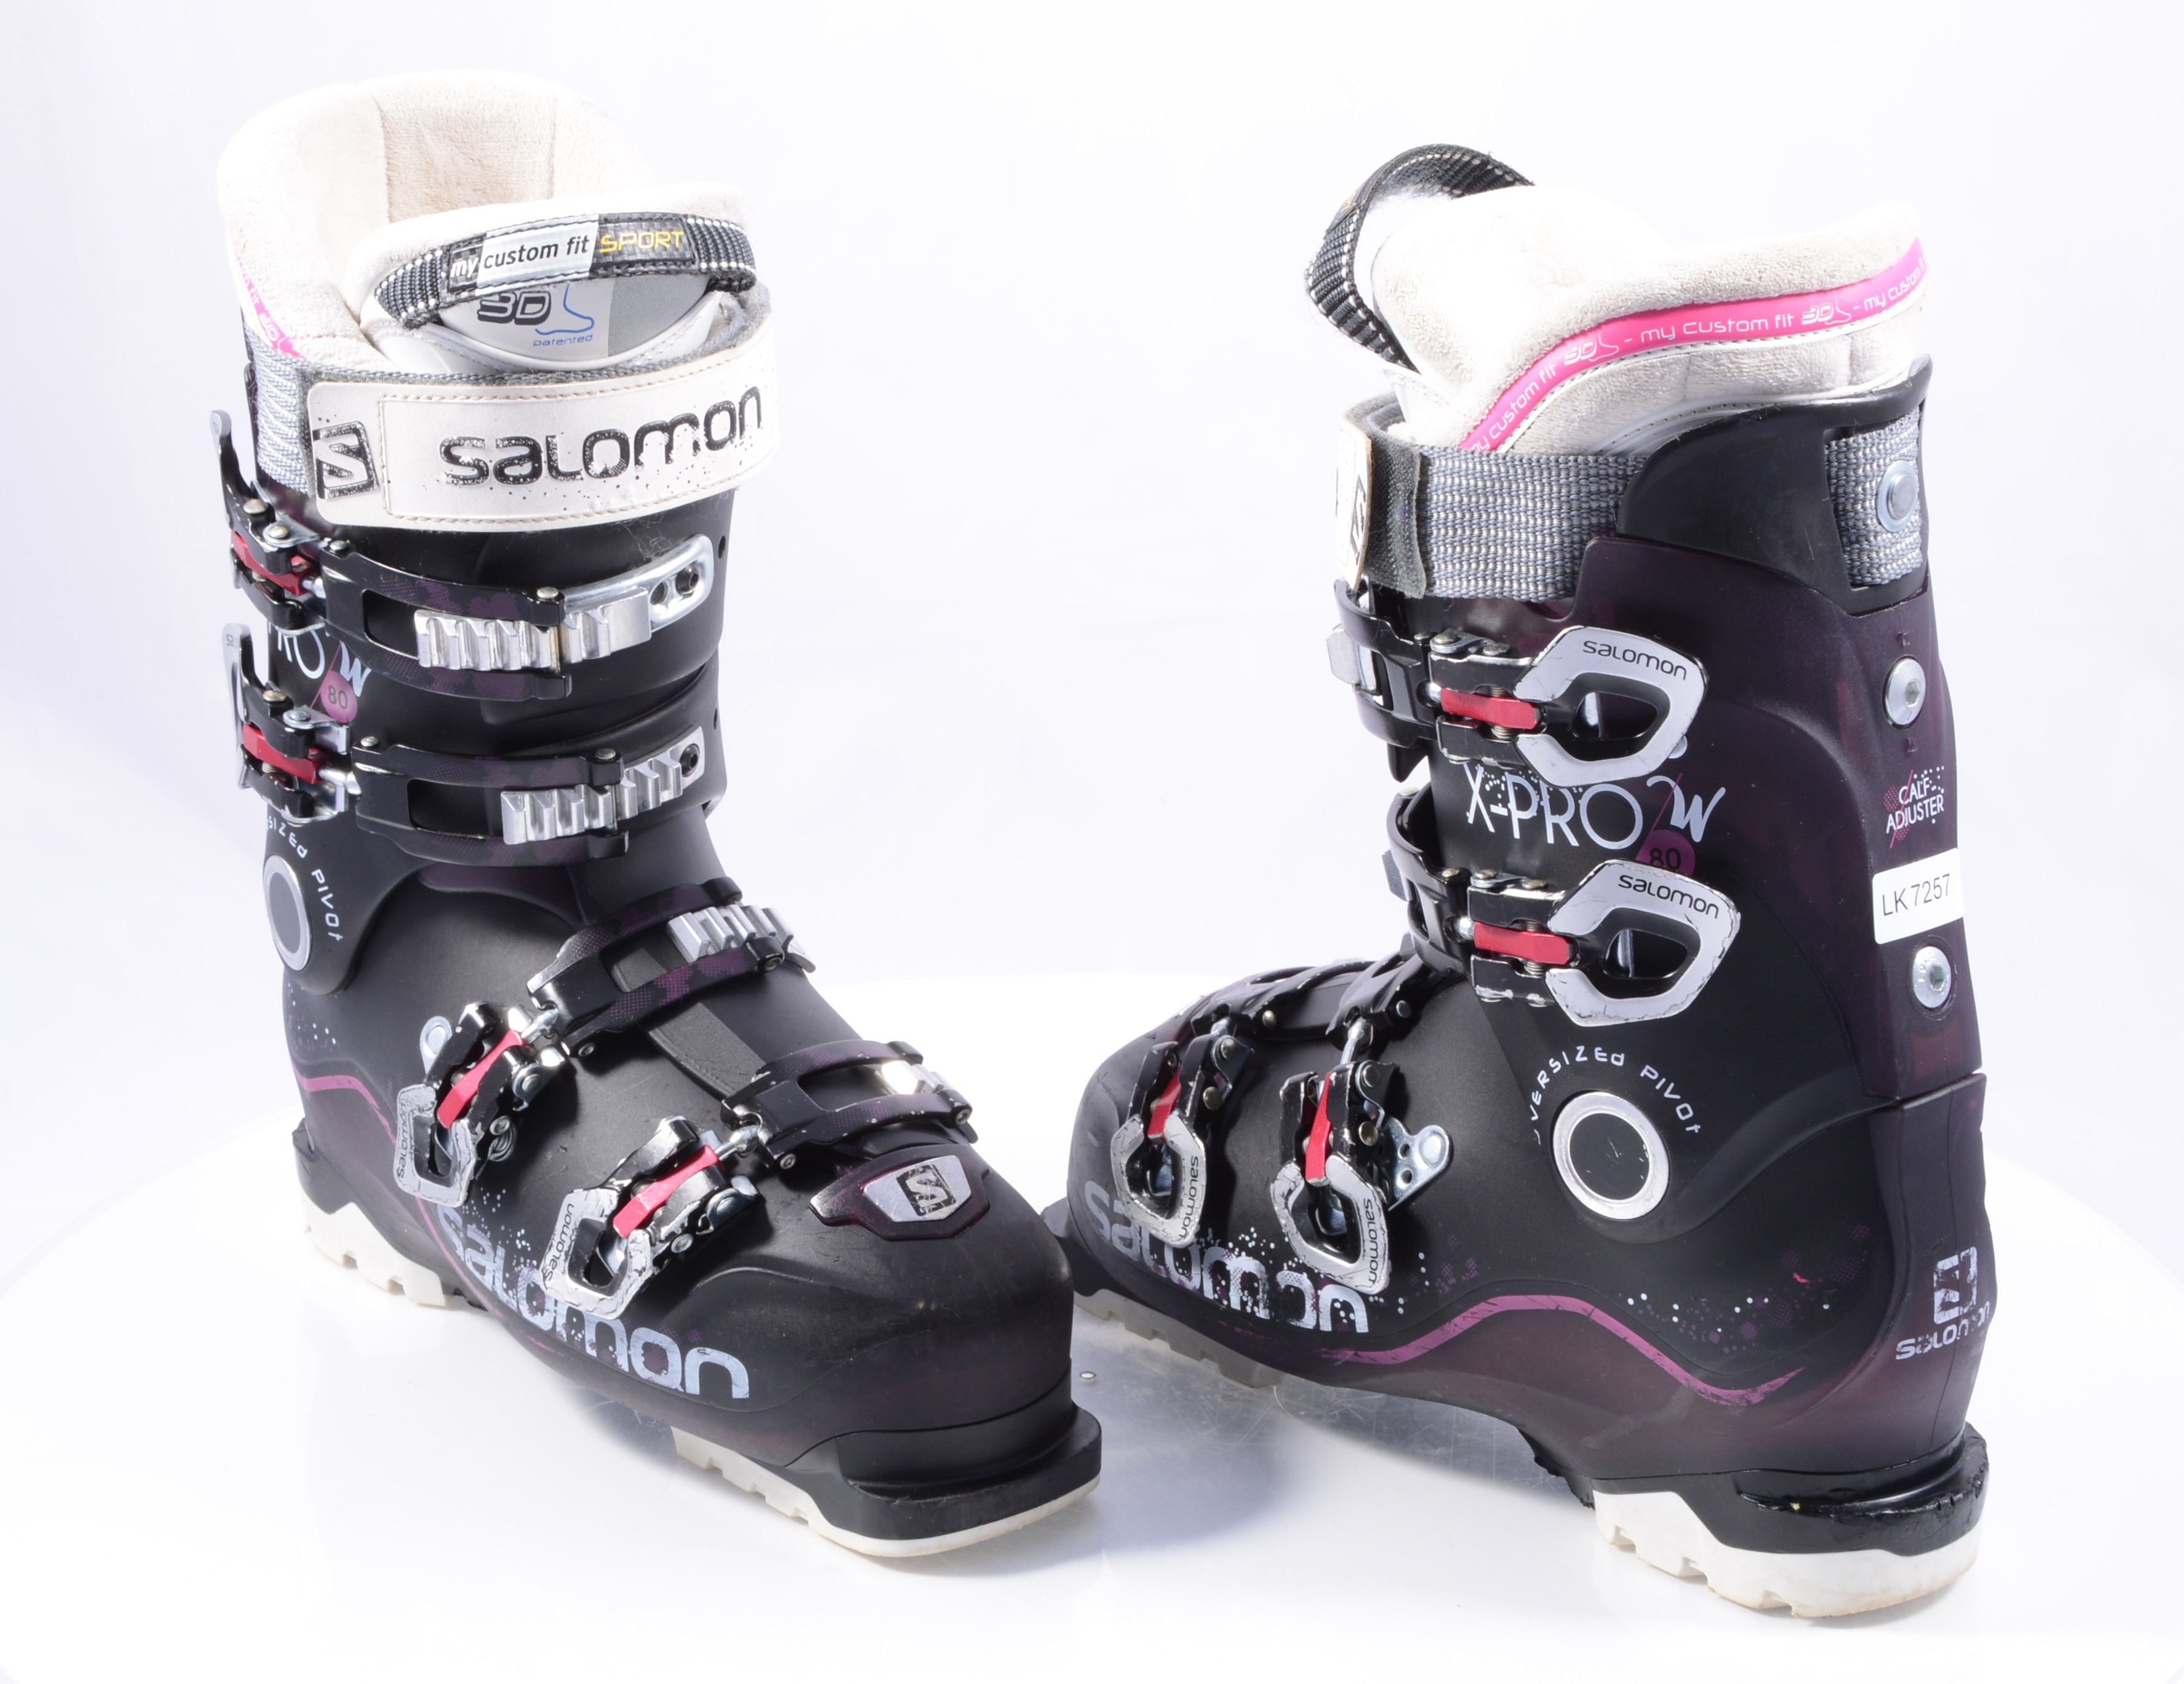 Veroveraar Detective democratische Partij women's ski boots SALOMON X-PRO 80 W, oversized pivot, calf adj., micro,  macro ( TOP condition ) - Mardosport.com